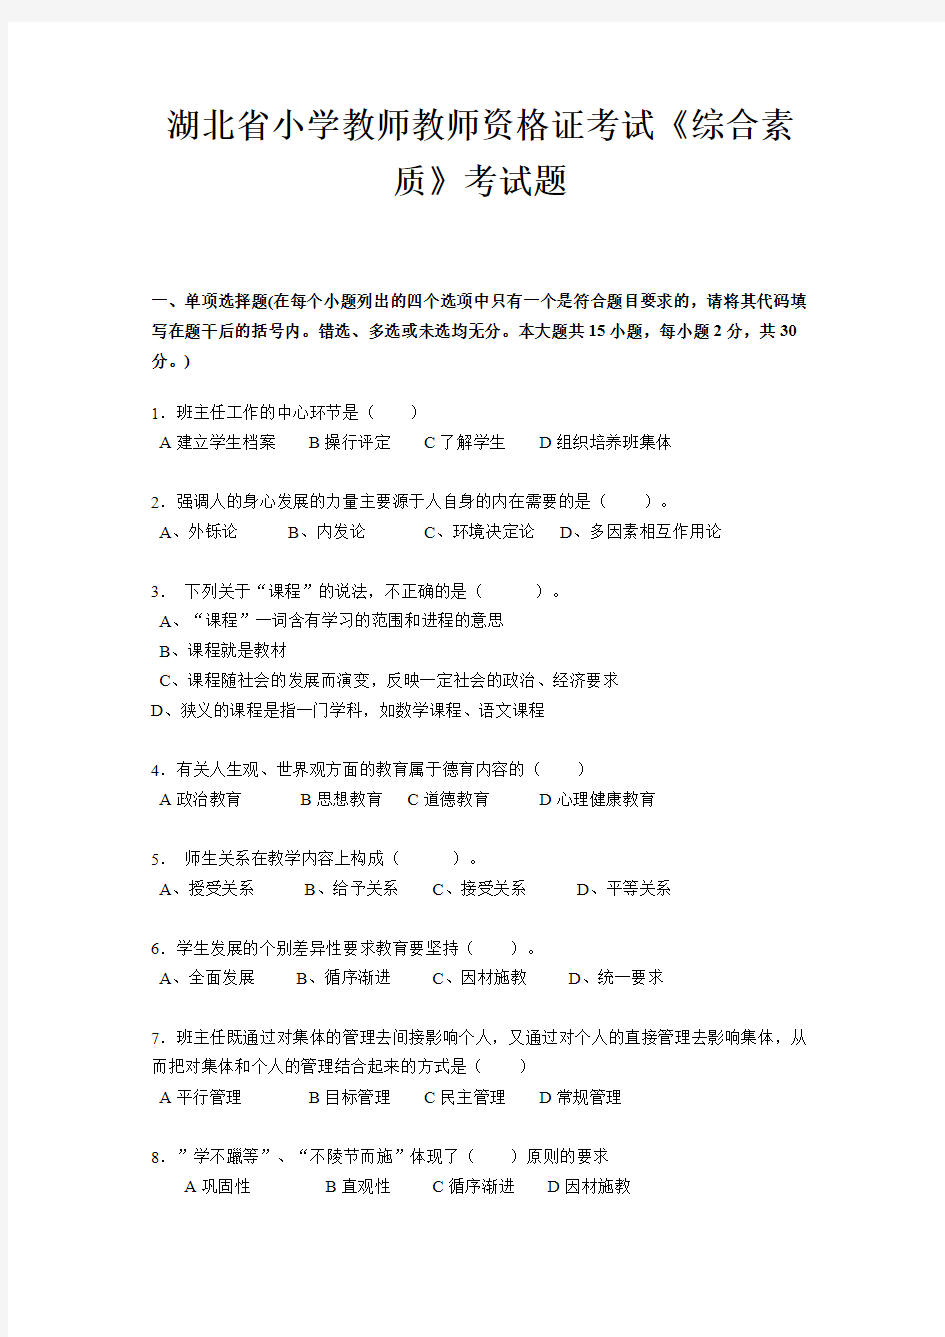 (完整)湖北省小学教师教师资格证考试《综合素质》考试题